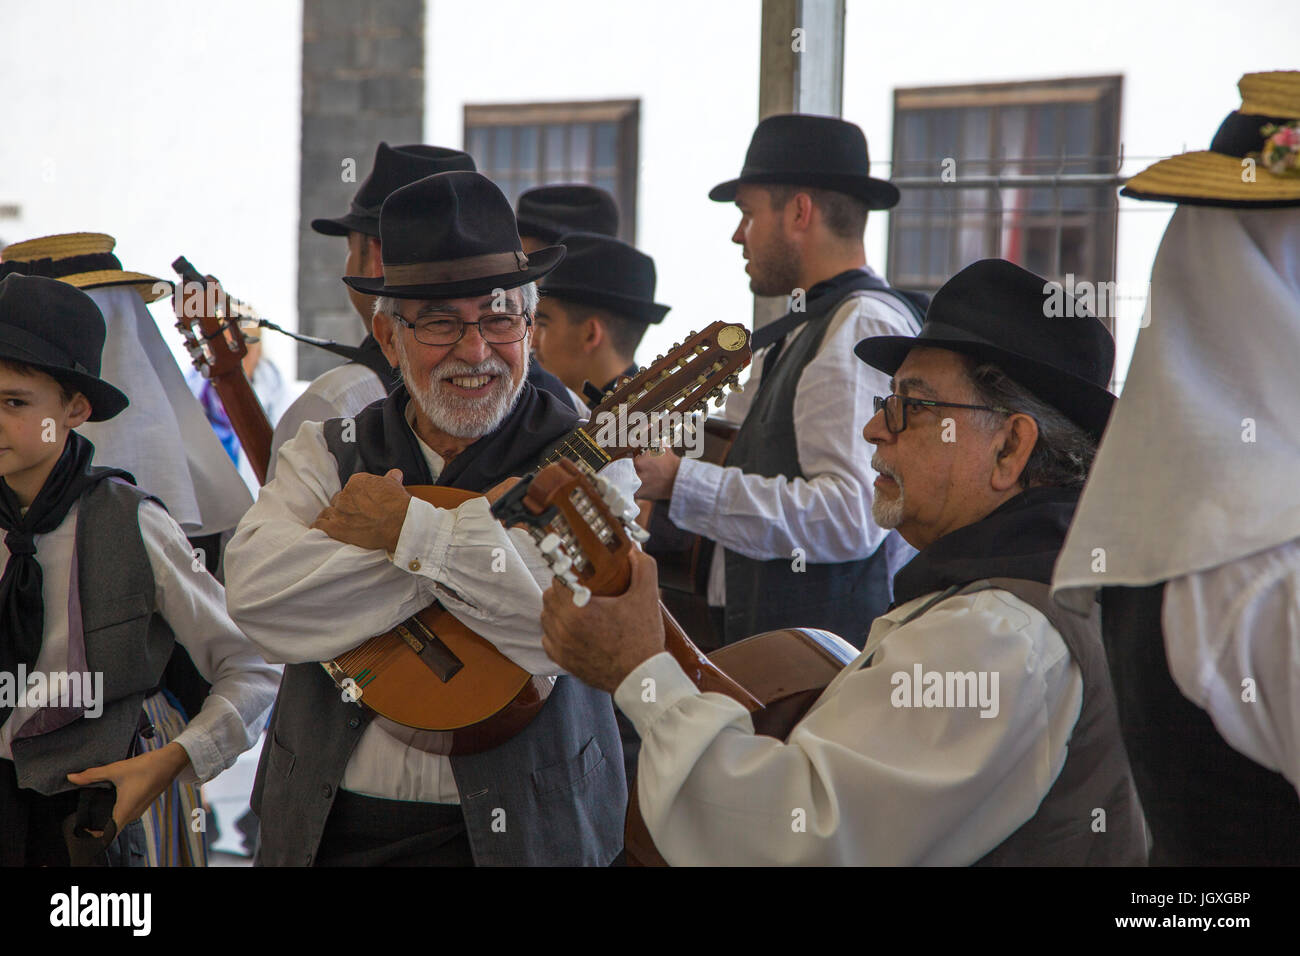 Folklore, musiker in traditionell kanarischer kleidung auf dem woechentlichen sonntagsmarkt in Teguise, Lanzarote, isole kanarische, europa | musican Foto Stock